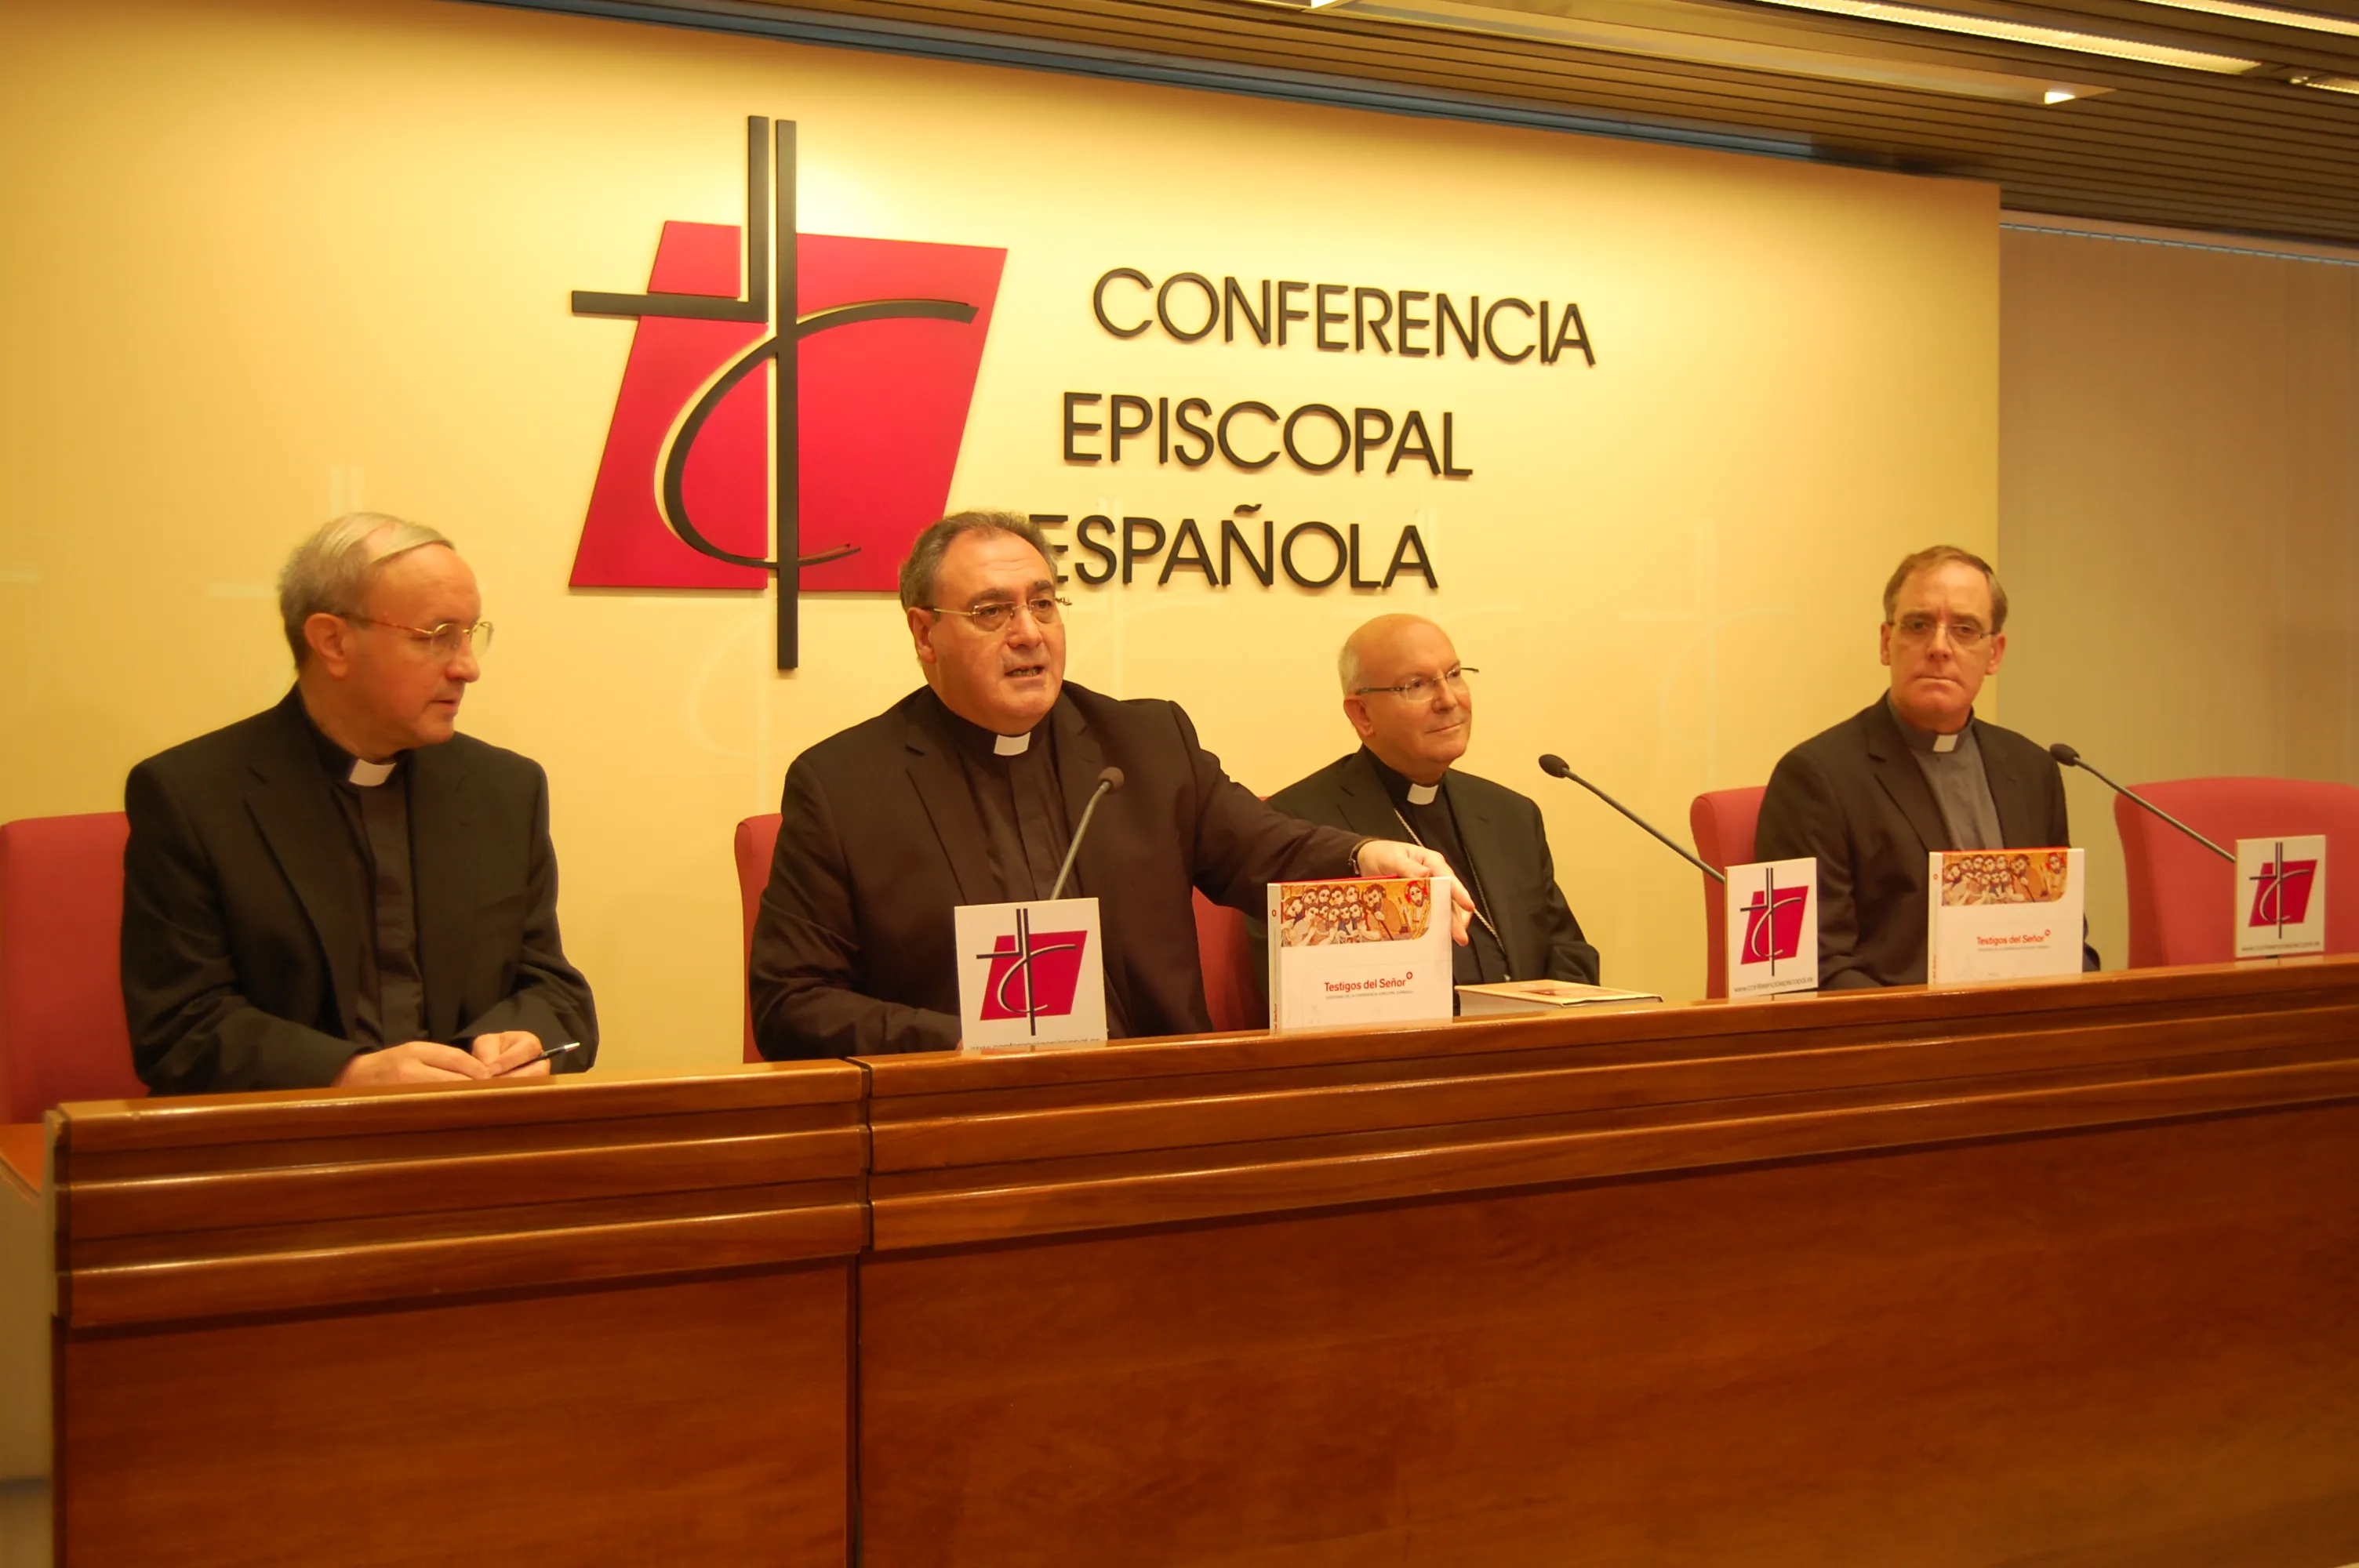 Foto: Conferencia Episcopal Española?w=200&h=150